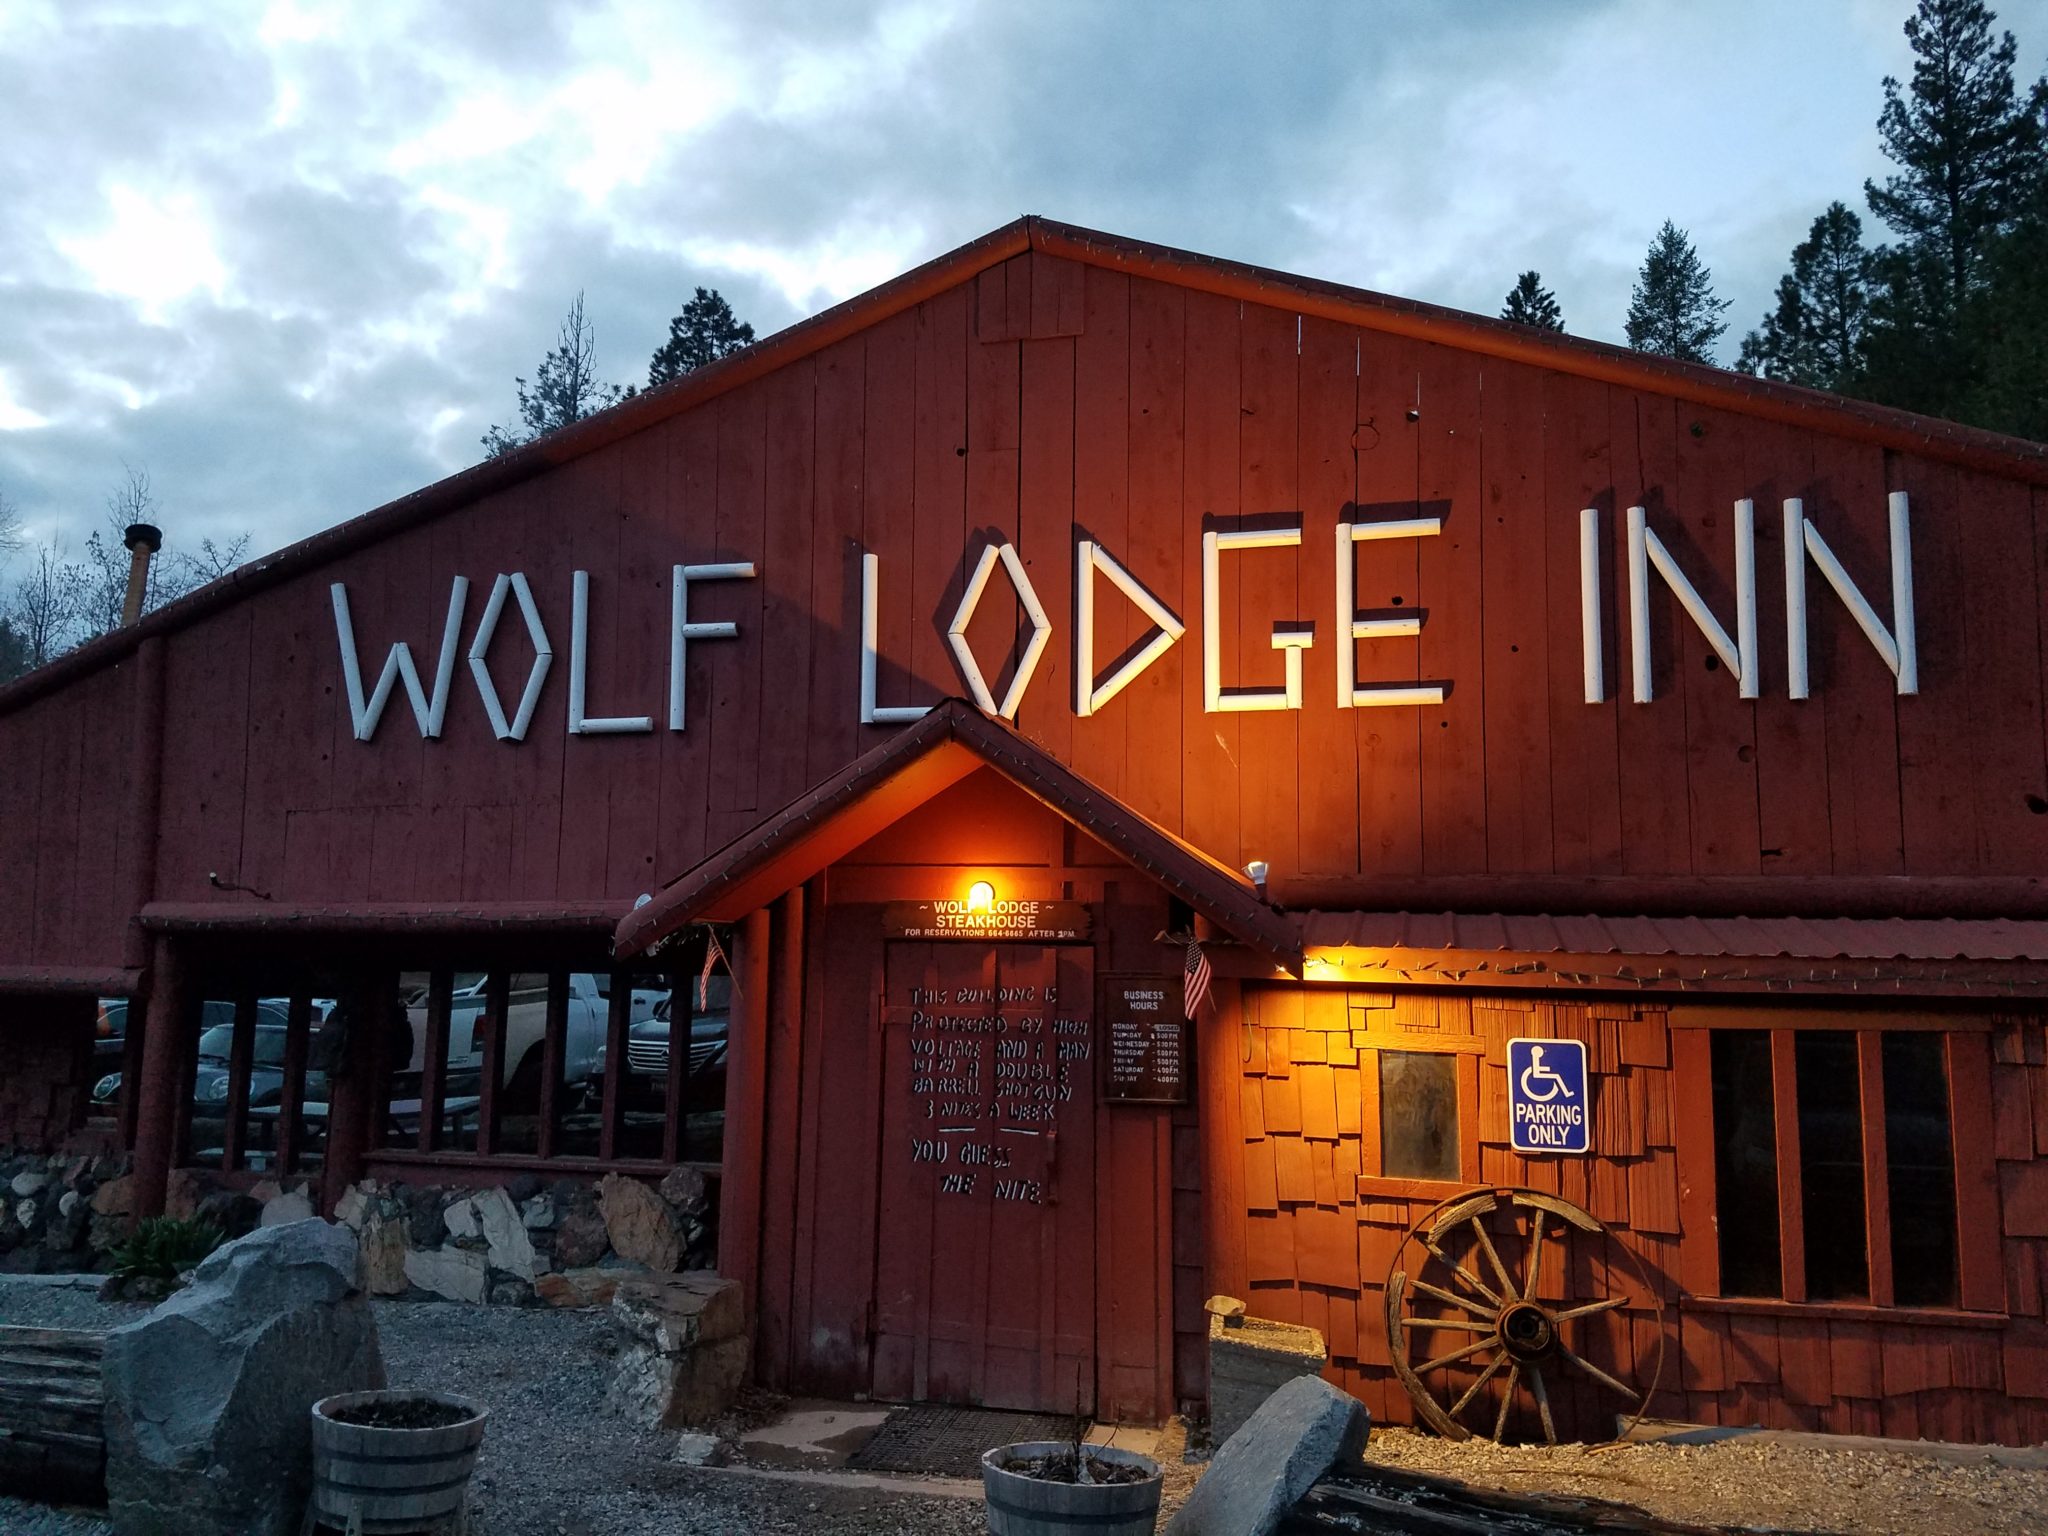 Wolf Lodge Inn Steakhouse Restaurant Review